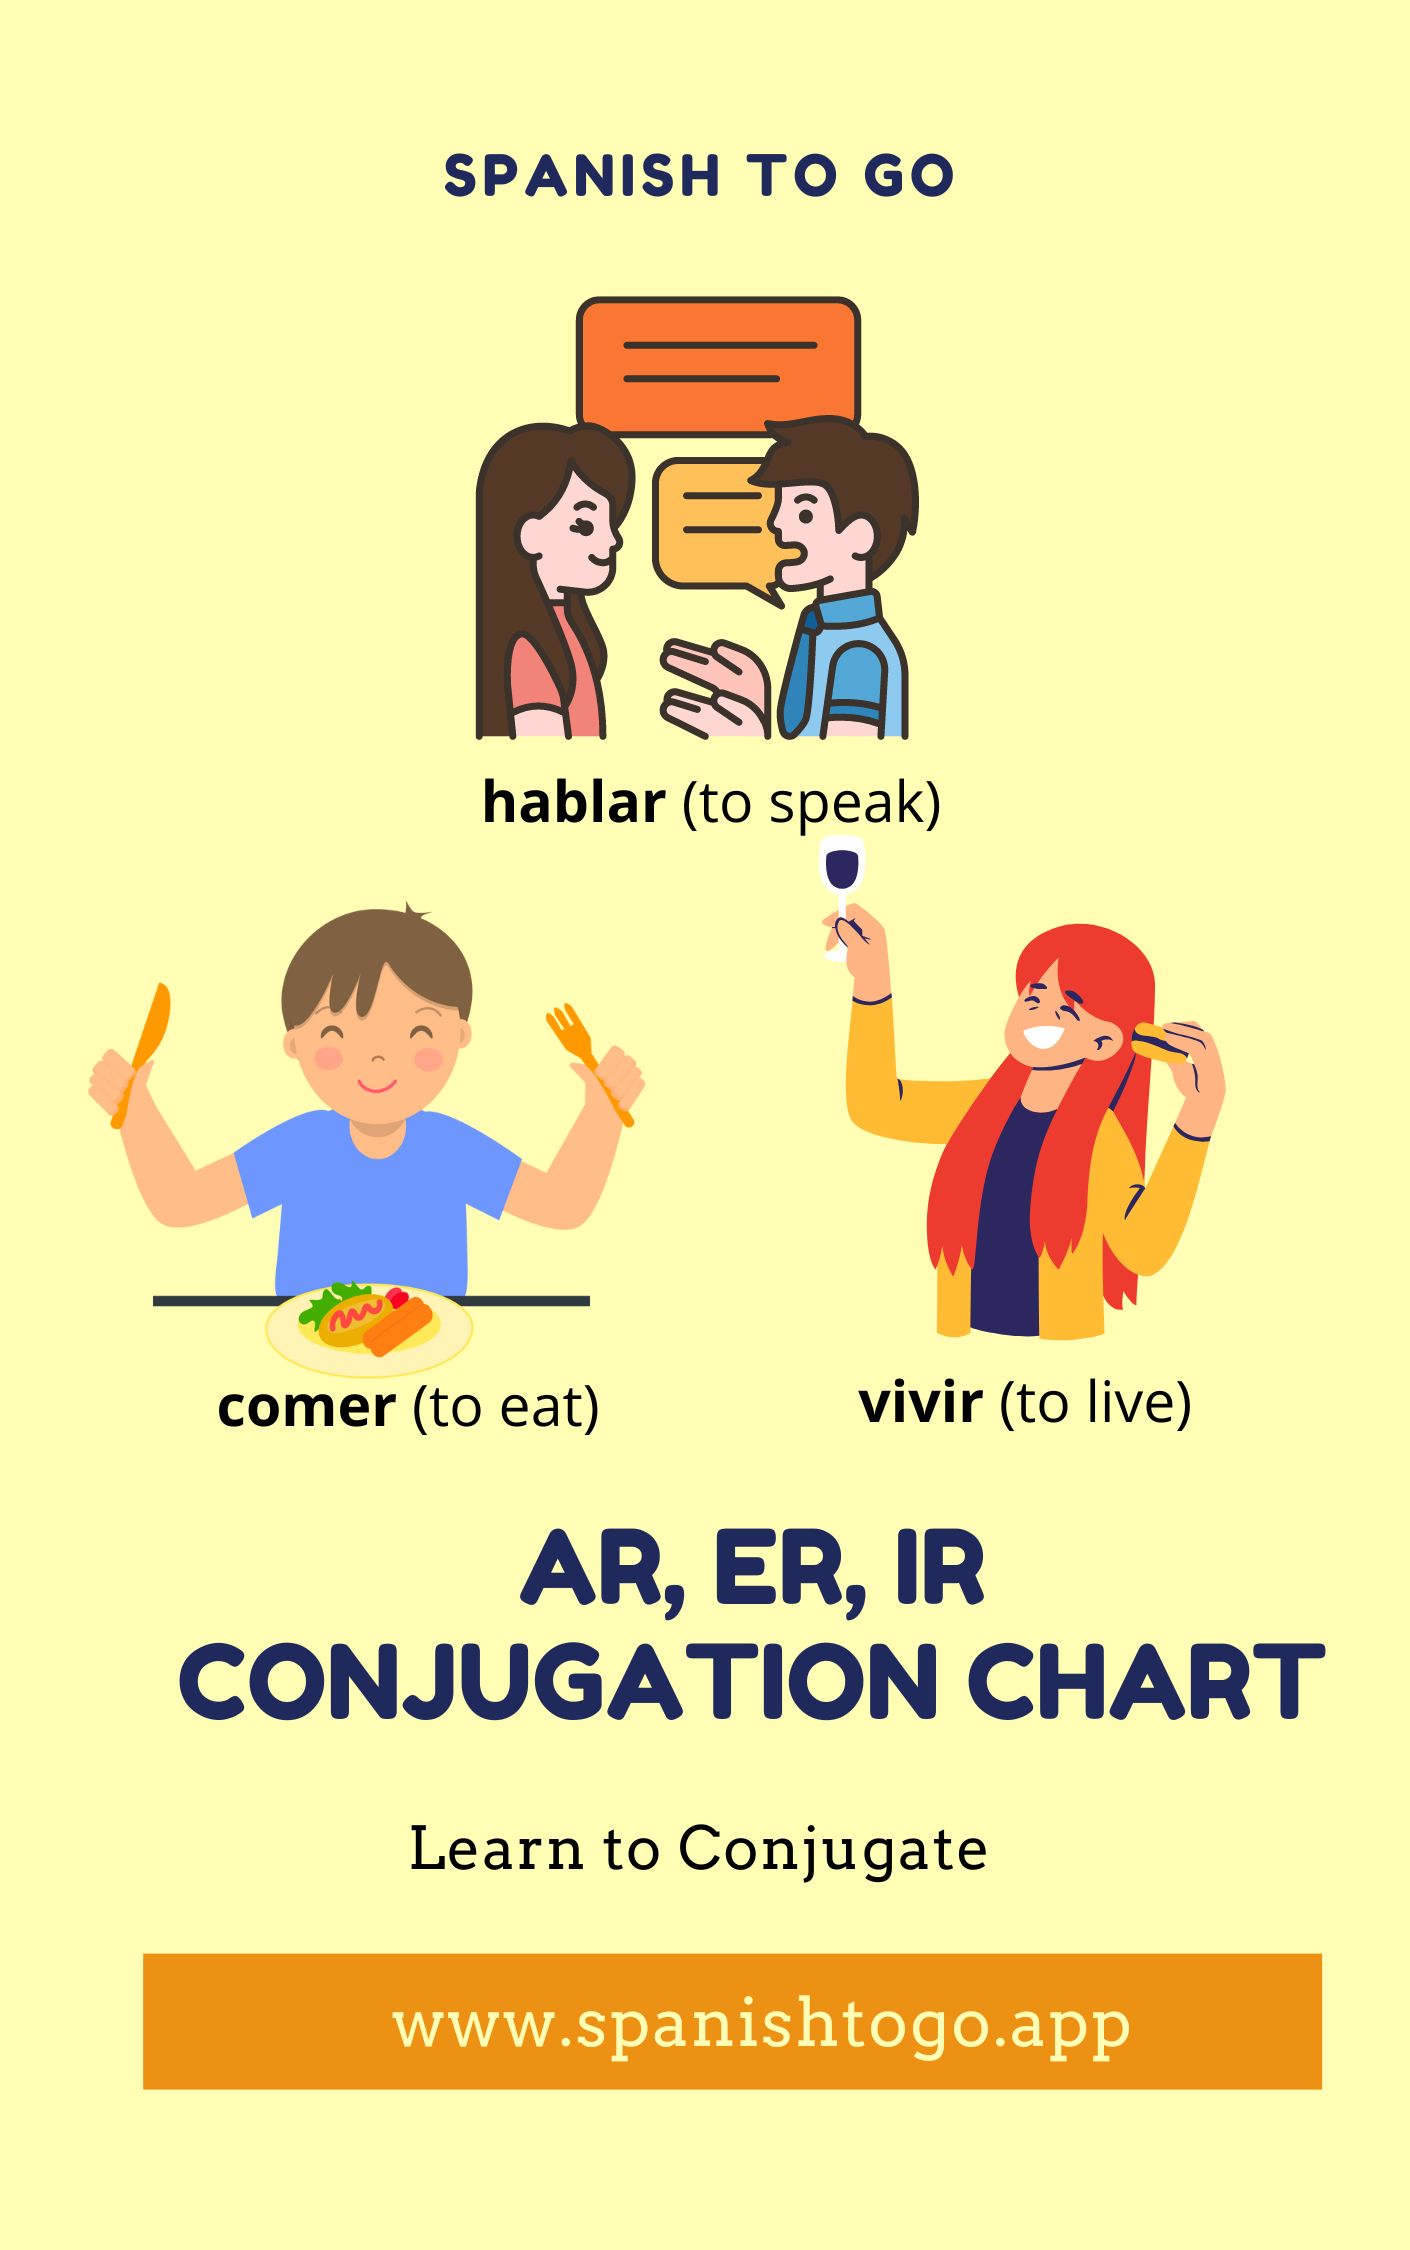 ar, er, ir Conjugation Chart